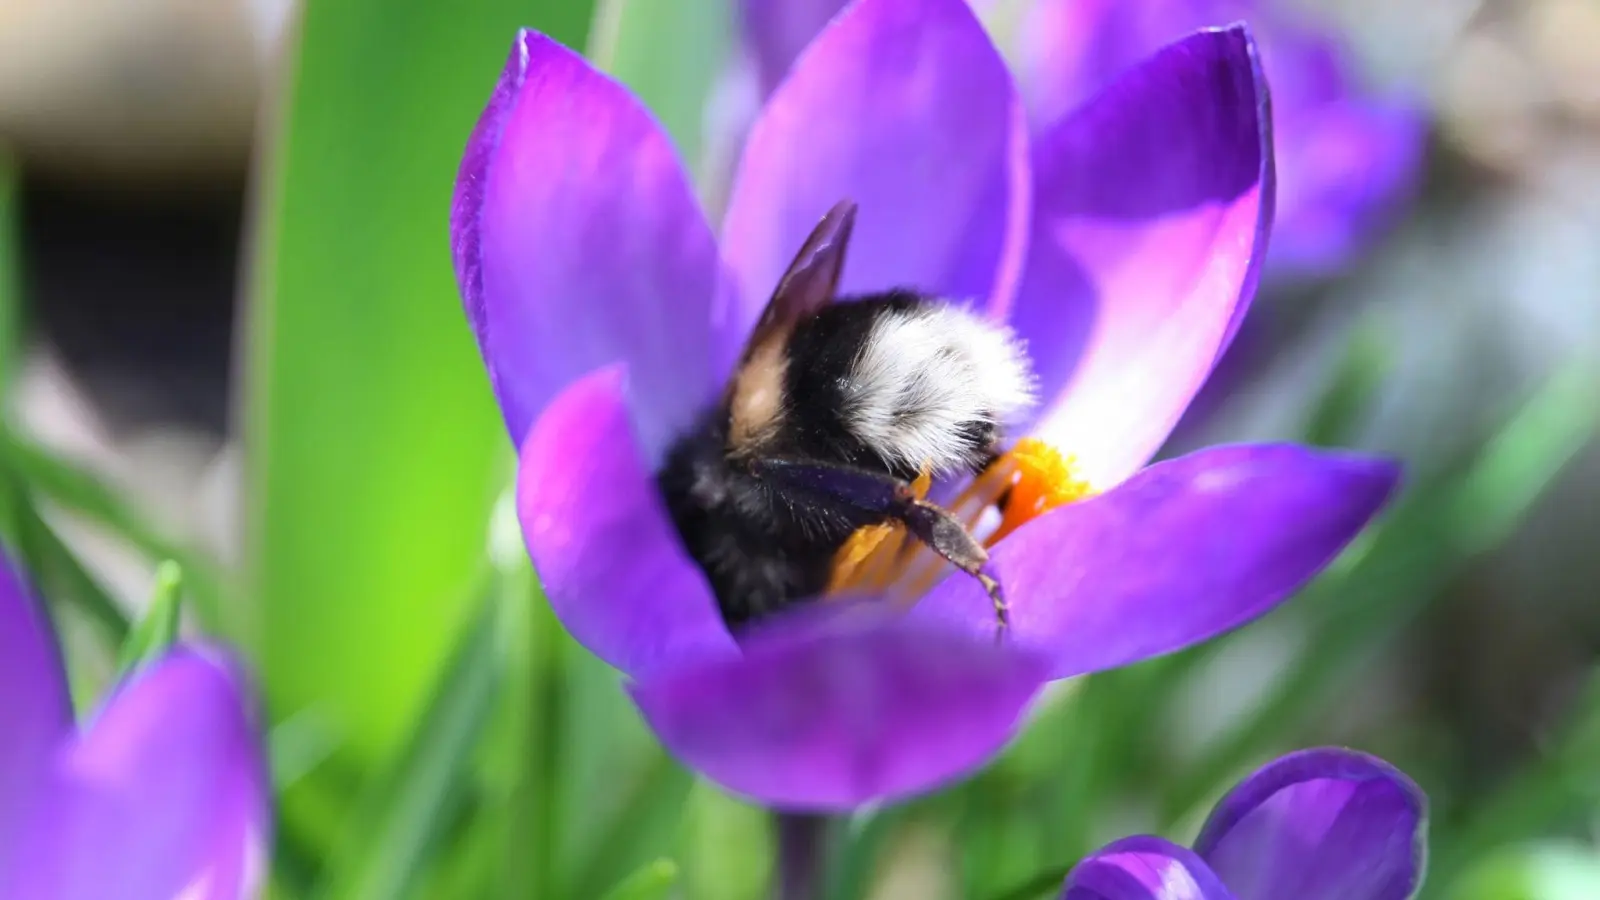 Hummeln brauchen jetzt Pollen - die finden sie zum Beispiel in Krokusblüten in Gärten und auf Balkons. (Foto: Karl-Josef Hildenbrand/dpa/dpa-tmn)